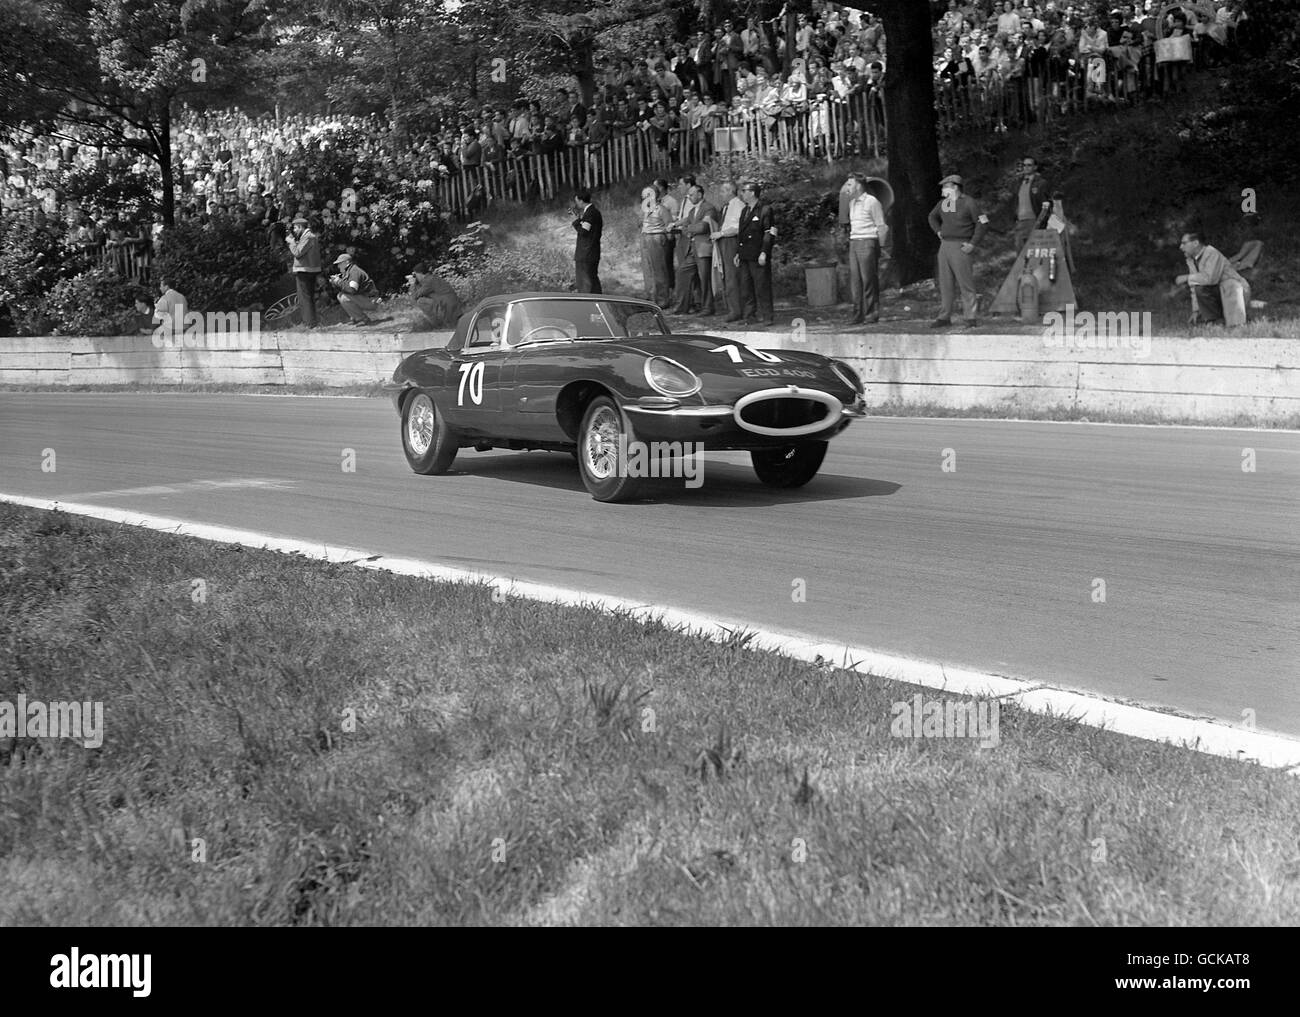 Carreras de Motor - Norbury Trophy Race - Crystal Palace. Jack Sears, Jaguar E-Type, quien terminó segundo detrás de la máquina similar de Roy Salvadori Foto de stock